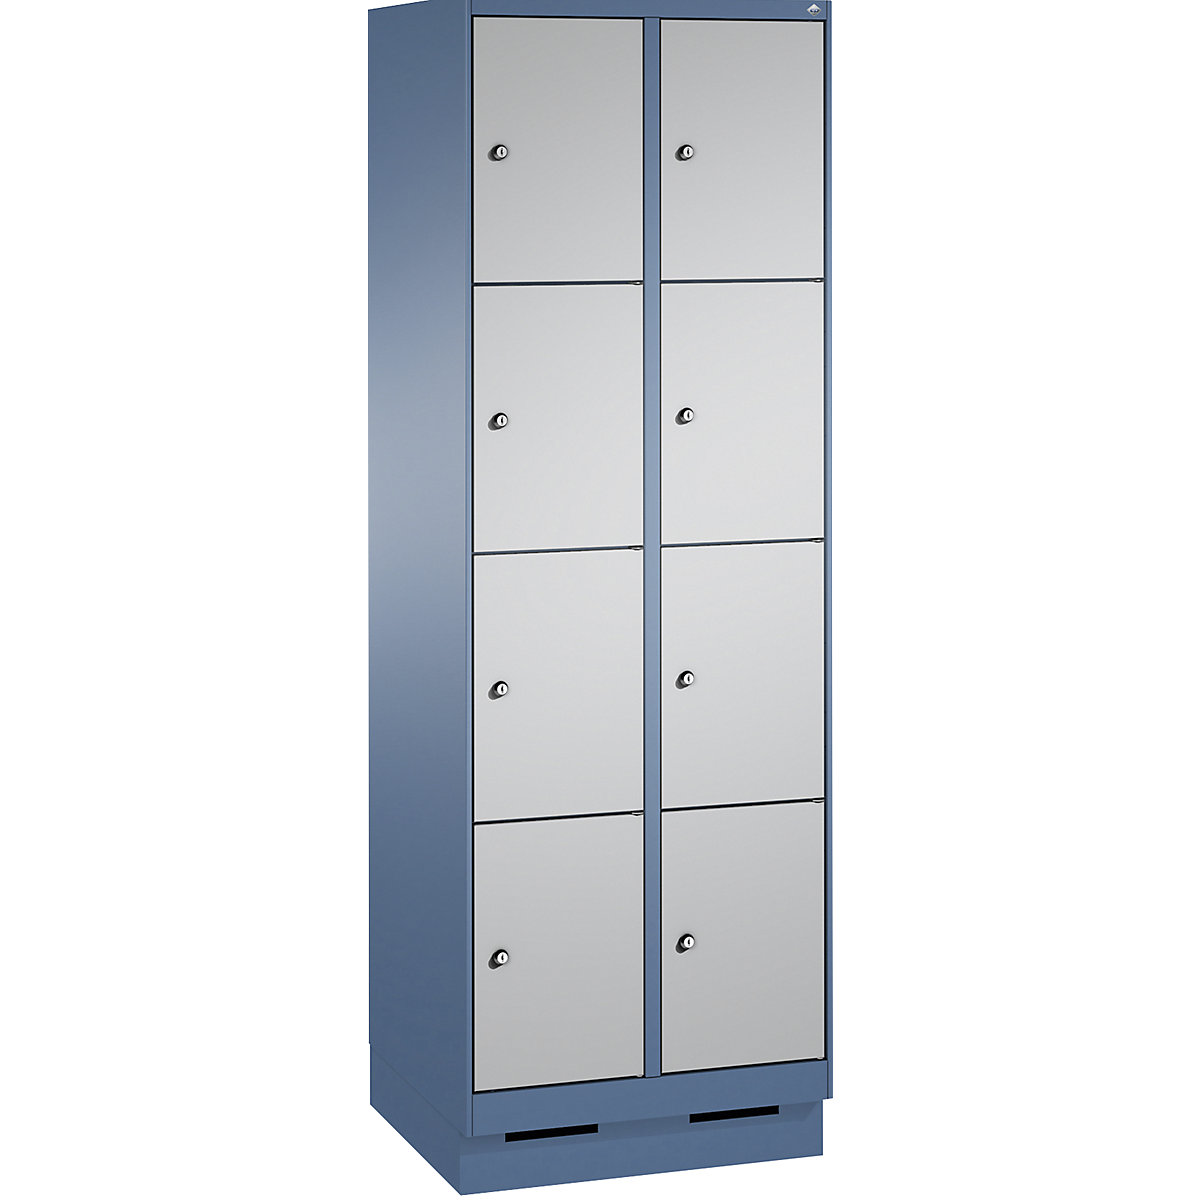 Armoire à casiers sur socle EVOLO – C+P, 2 compartiments, 4 casiers chacun, largeur compartiments 300 mm, bleu distant / aluminium-8